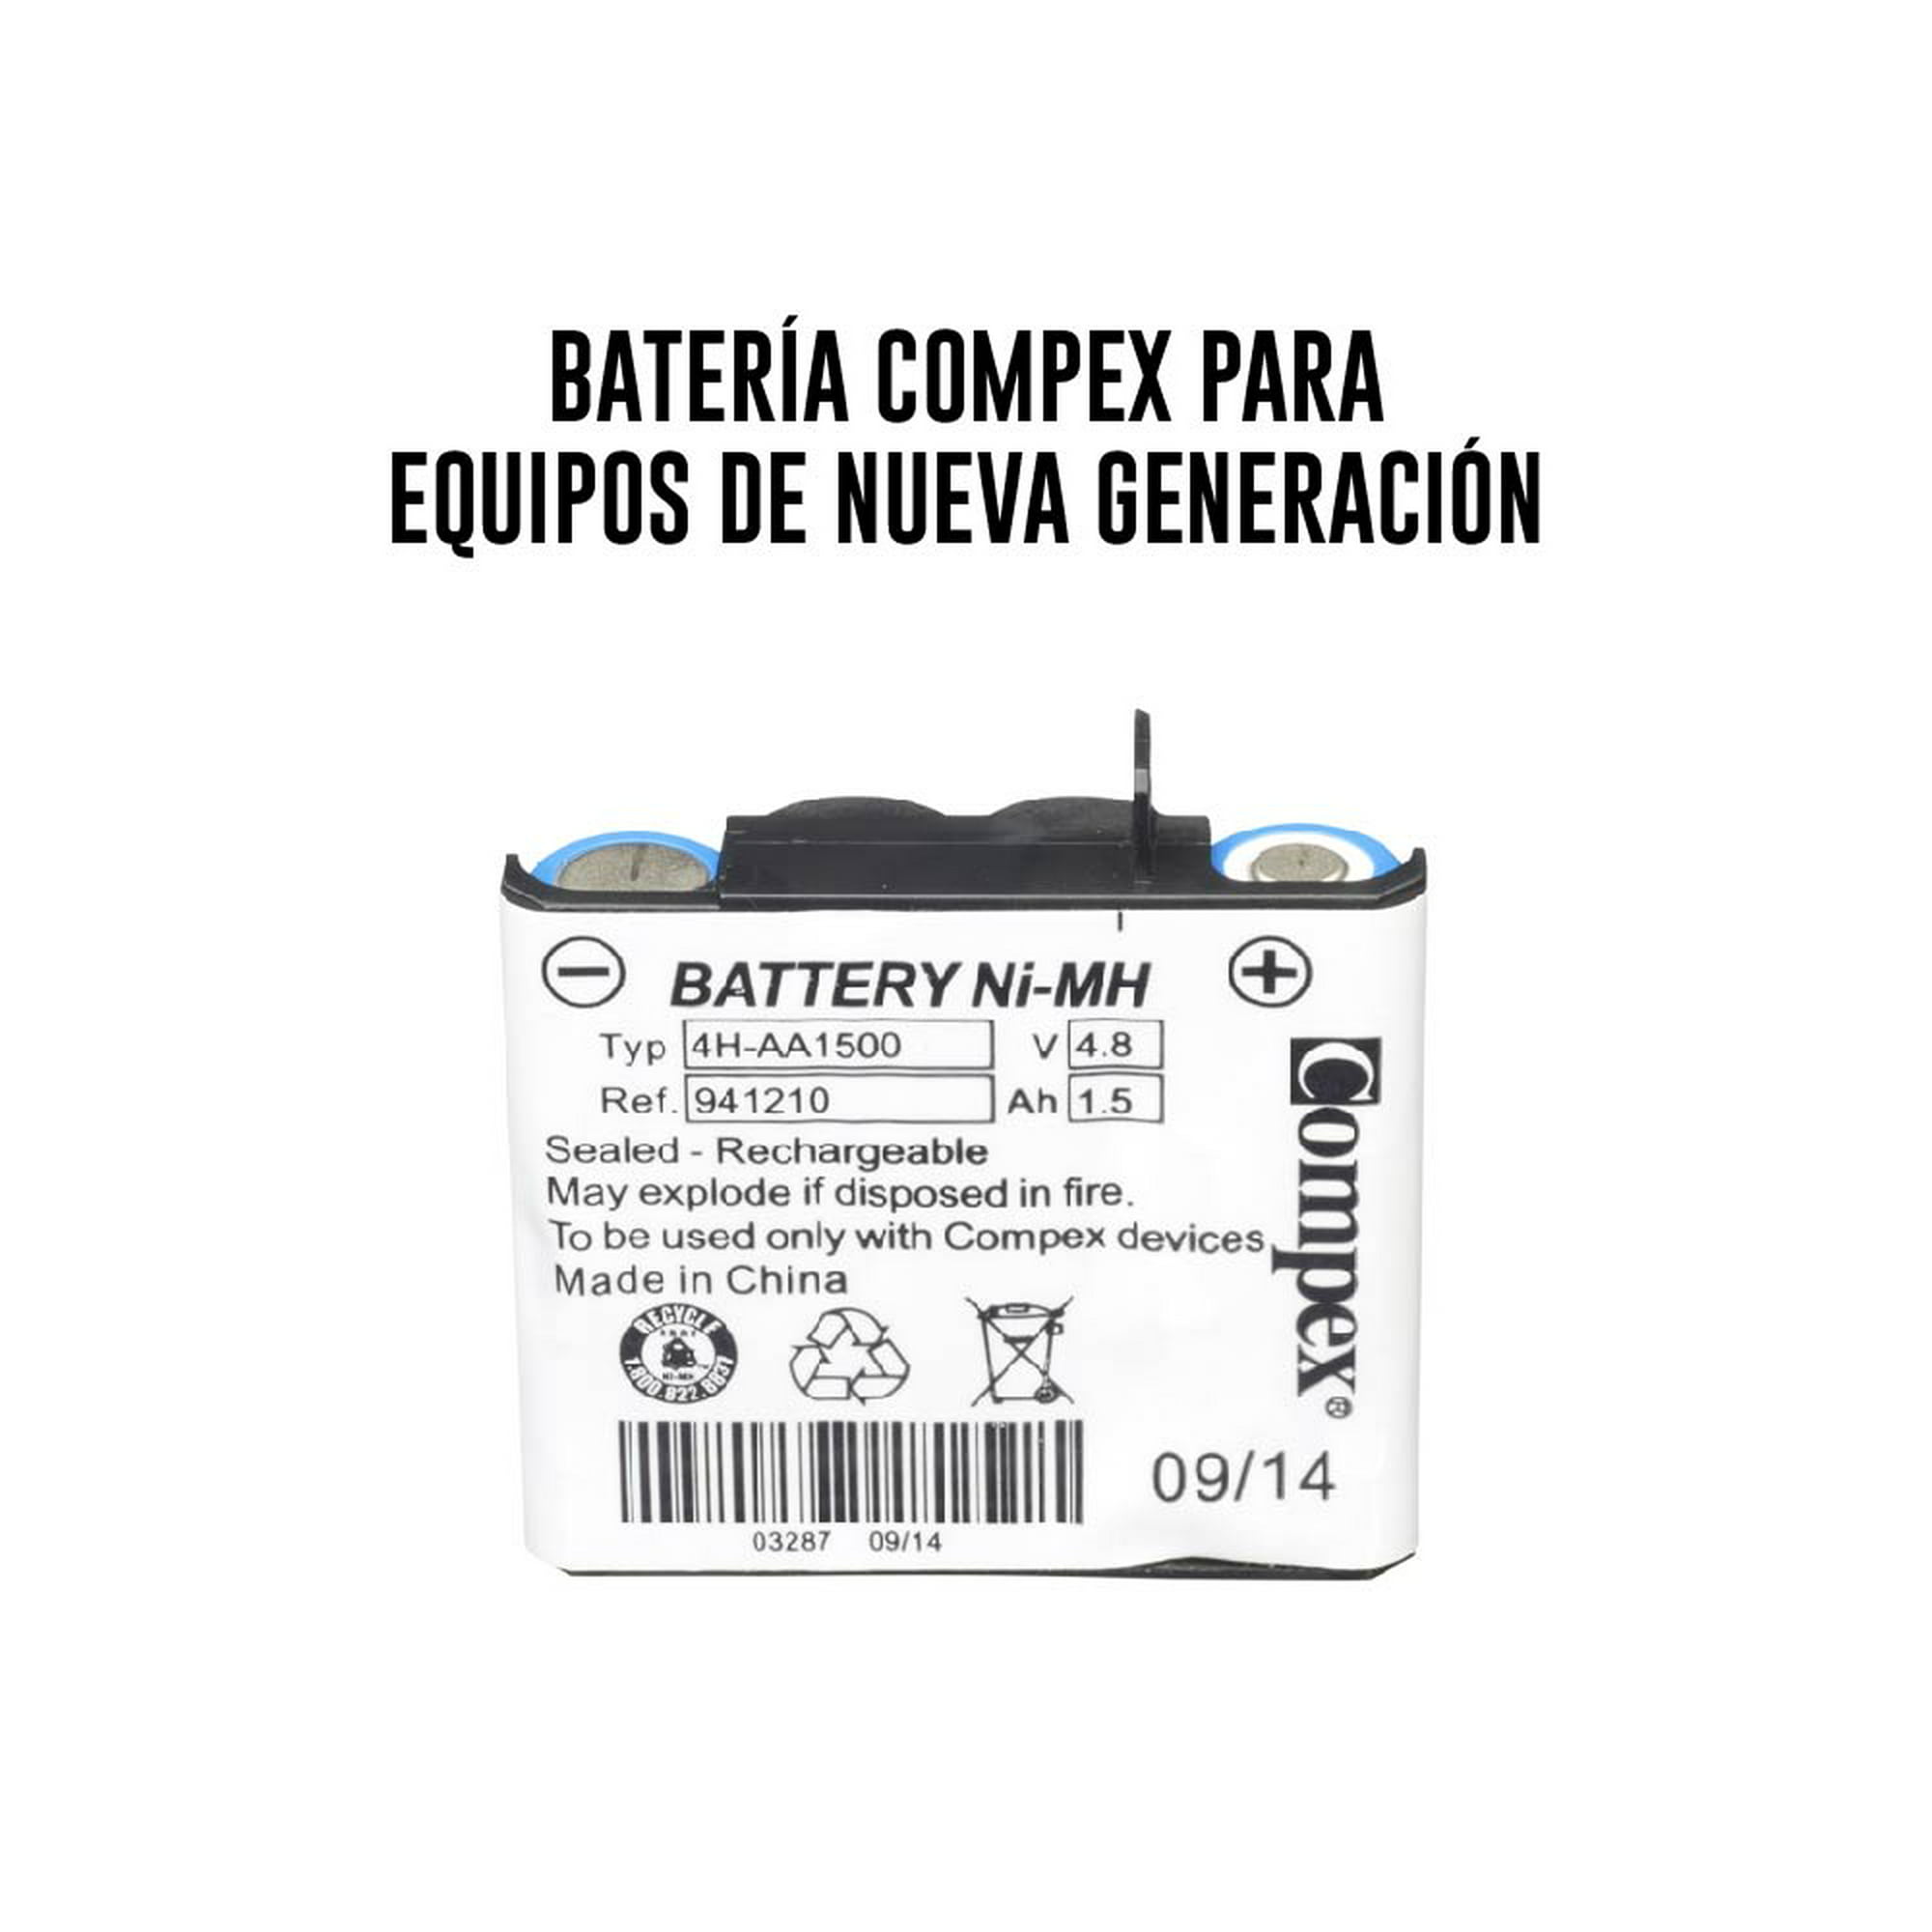 Batería Compex Para equipos de nueva generación